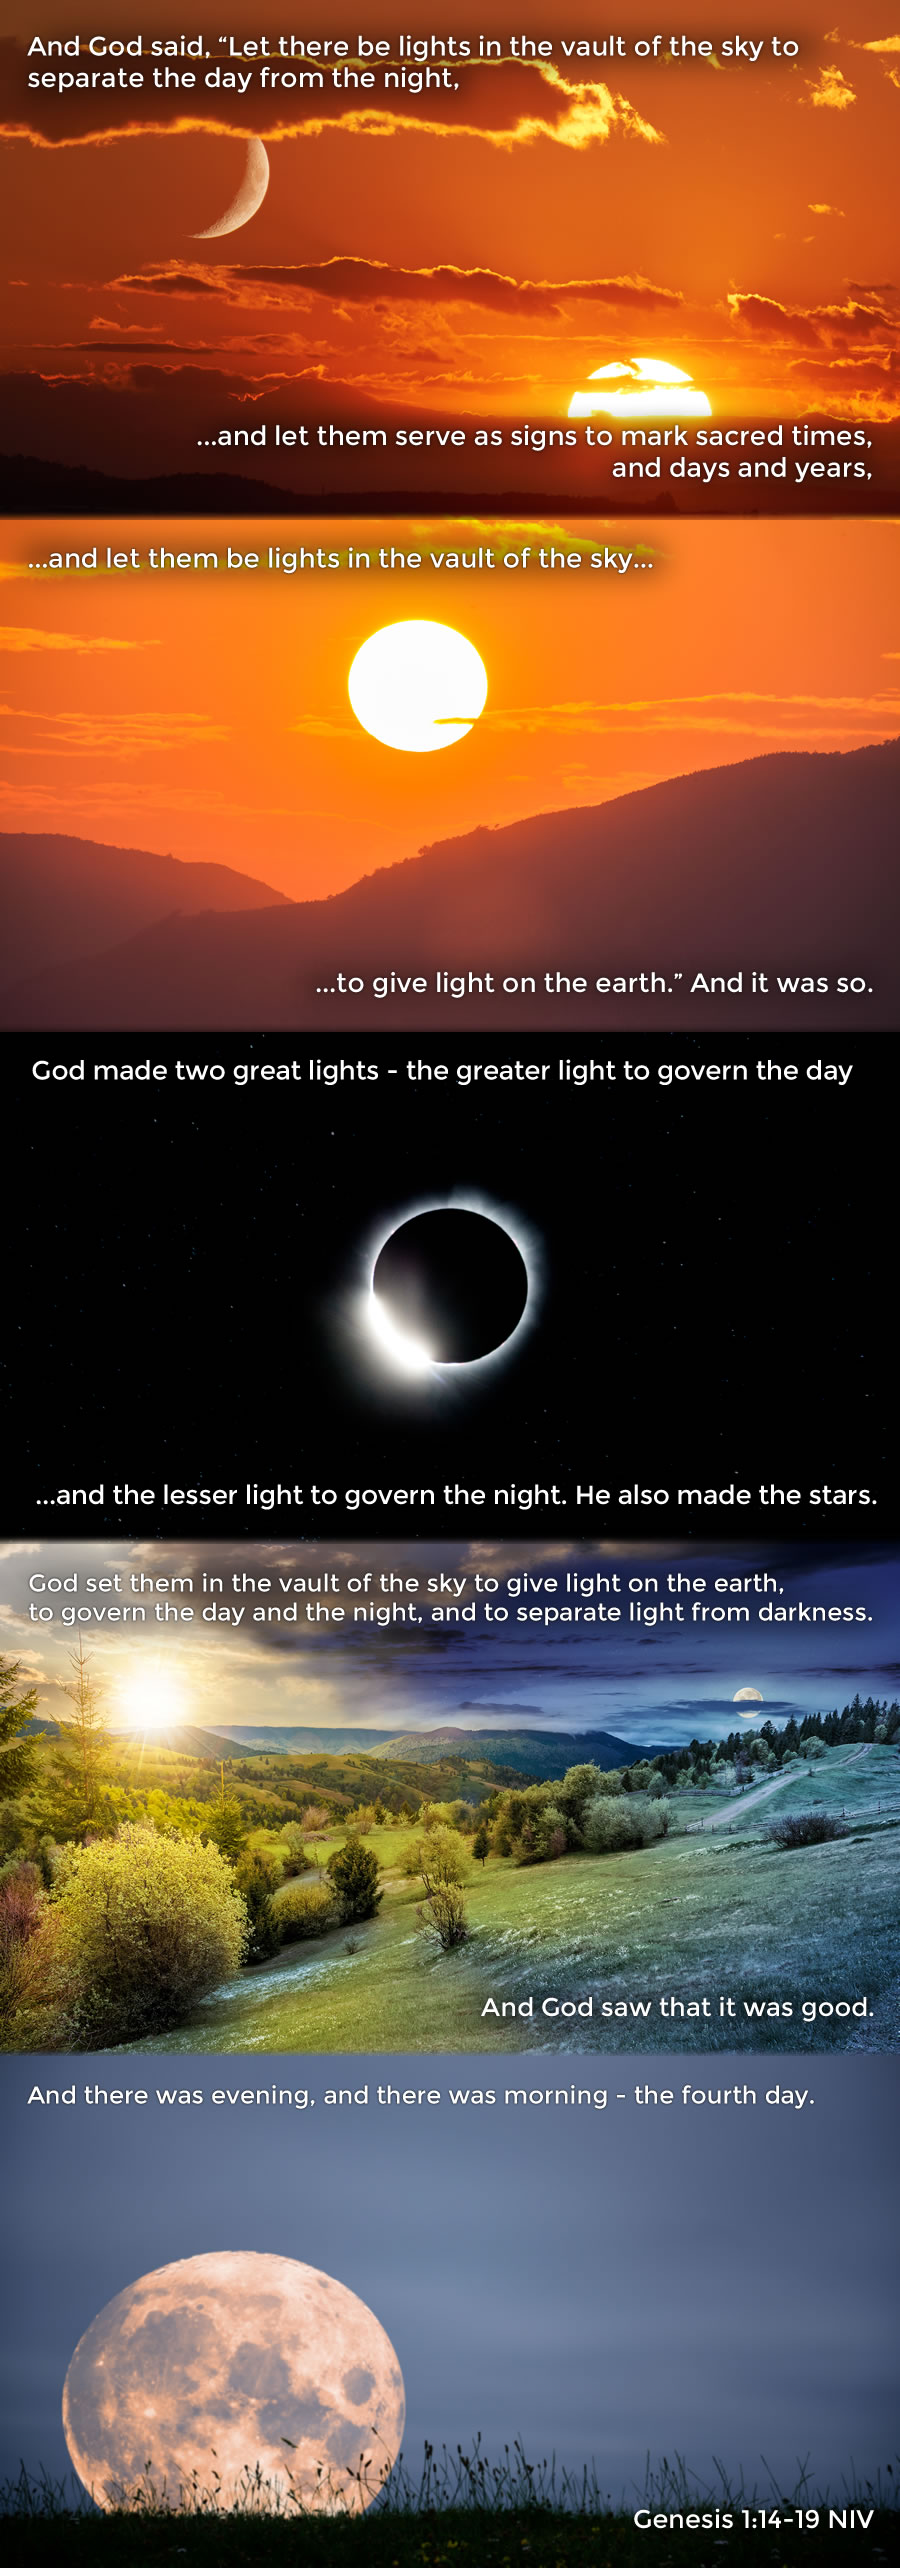 Genesis 1.14-19